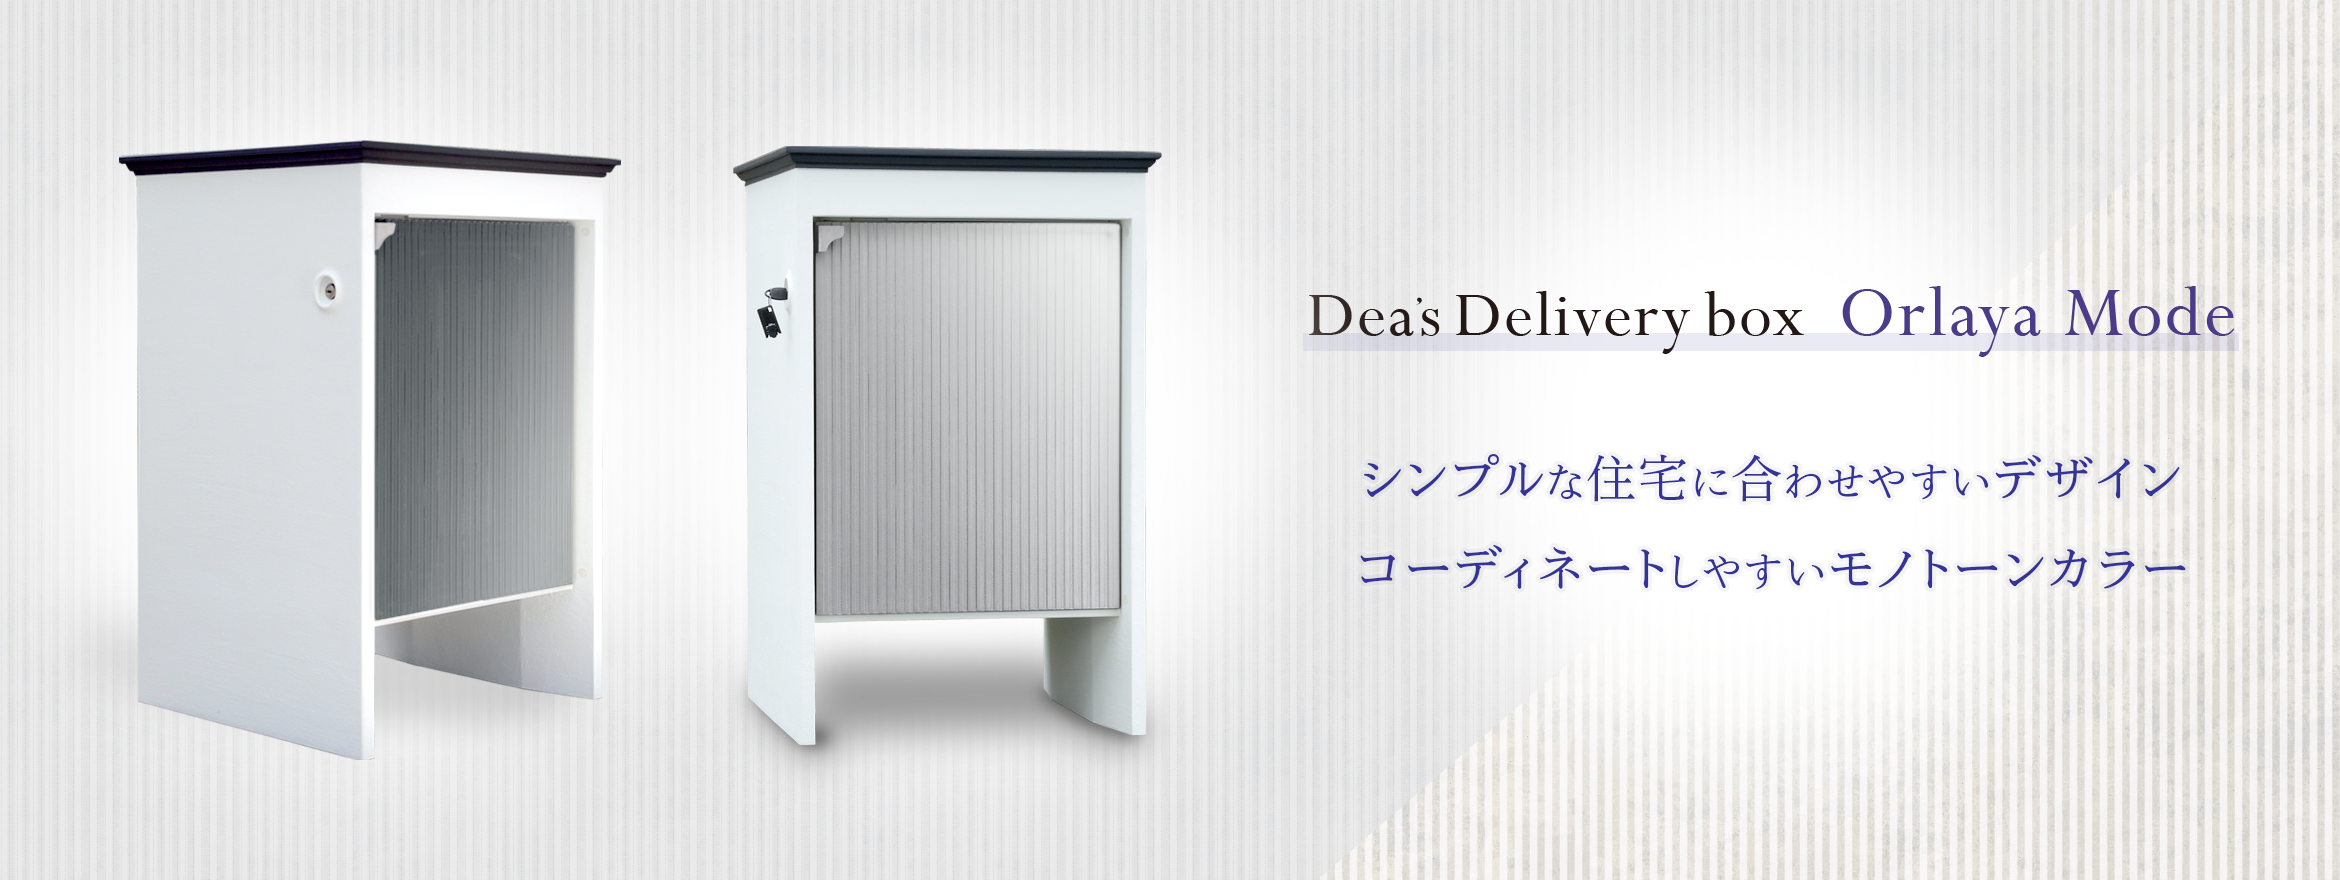 限定タイムセール <br>ディーズガーデン 宅配ボックス オルレアモード シルバー DSAD011 <br>デリバリーボックス モノトーン おしゃれ  オシャレ シンプル Dea's deliverybox Orlaya Mode <br>